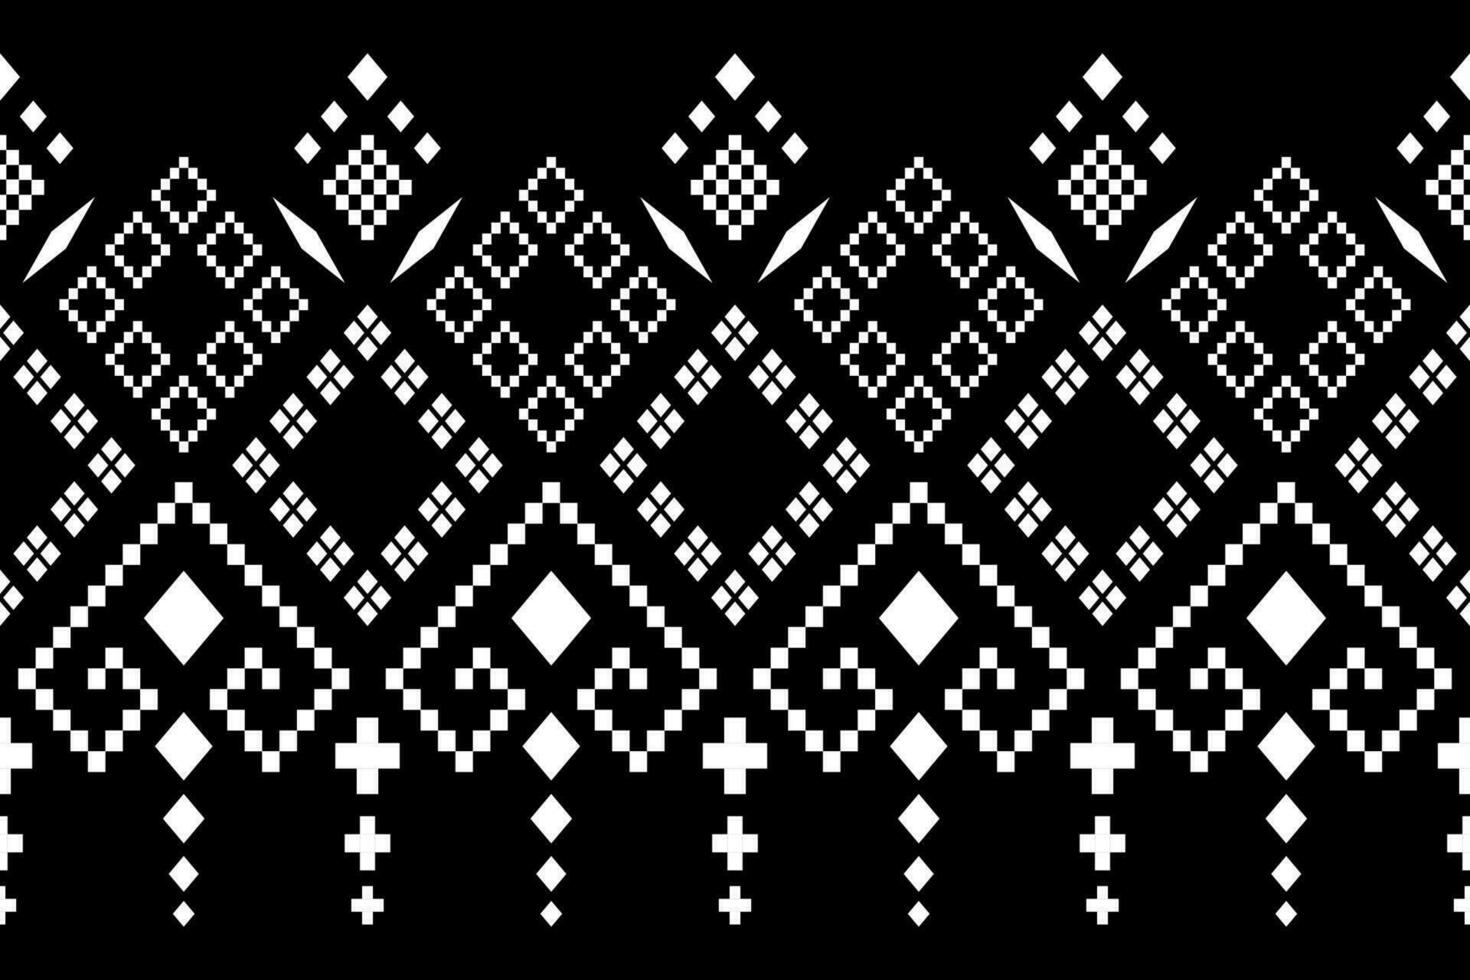 natuur jaargangen kruis steek traditioneel etnisch patroon paisley bloem ikat achtergrond abstract aztec Afrikaanse Indonesisch Indisch naadloos patroon voor kleding stof afdrukken kleding jurk tapijt gordijnen en sarong vector